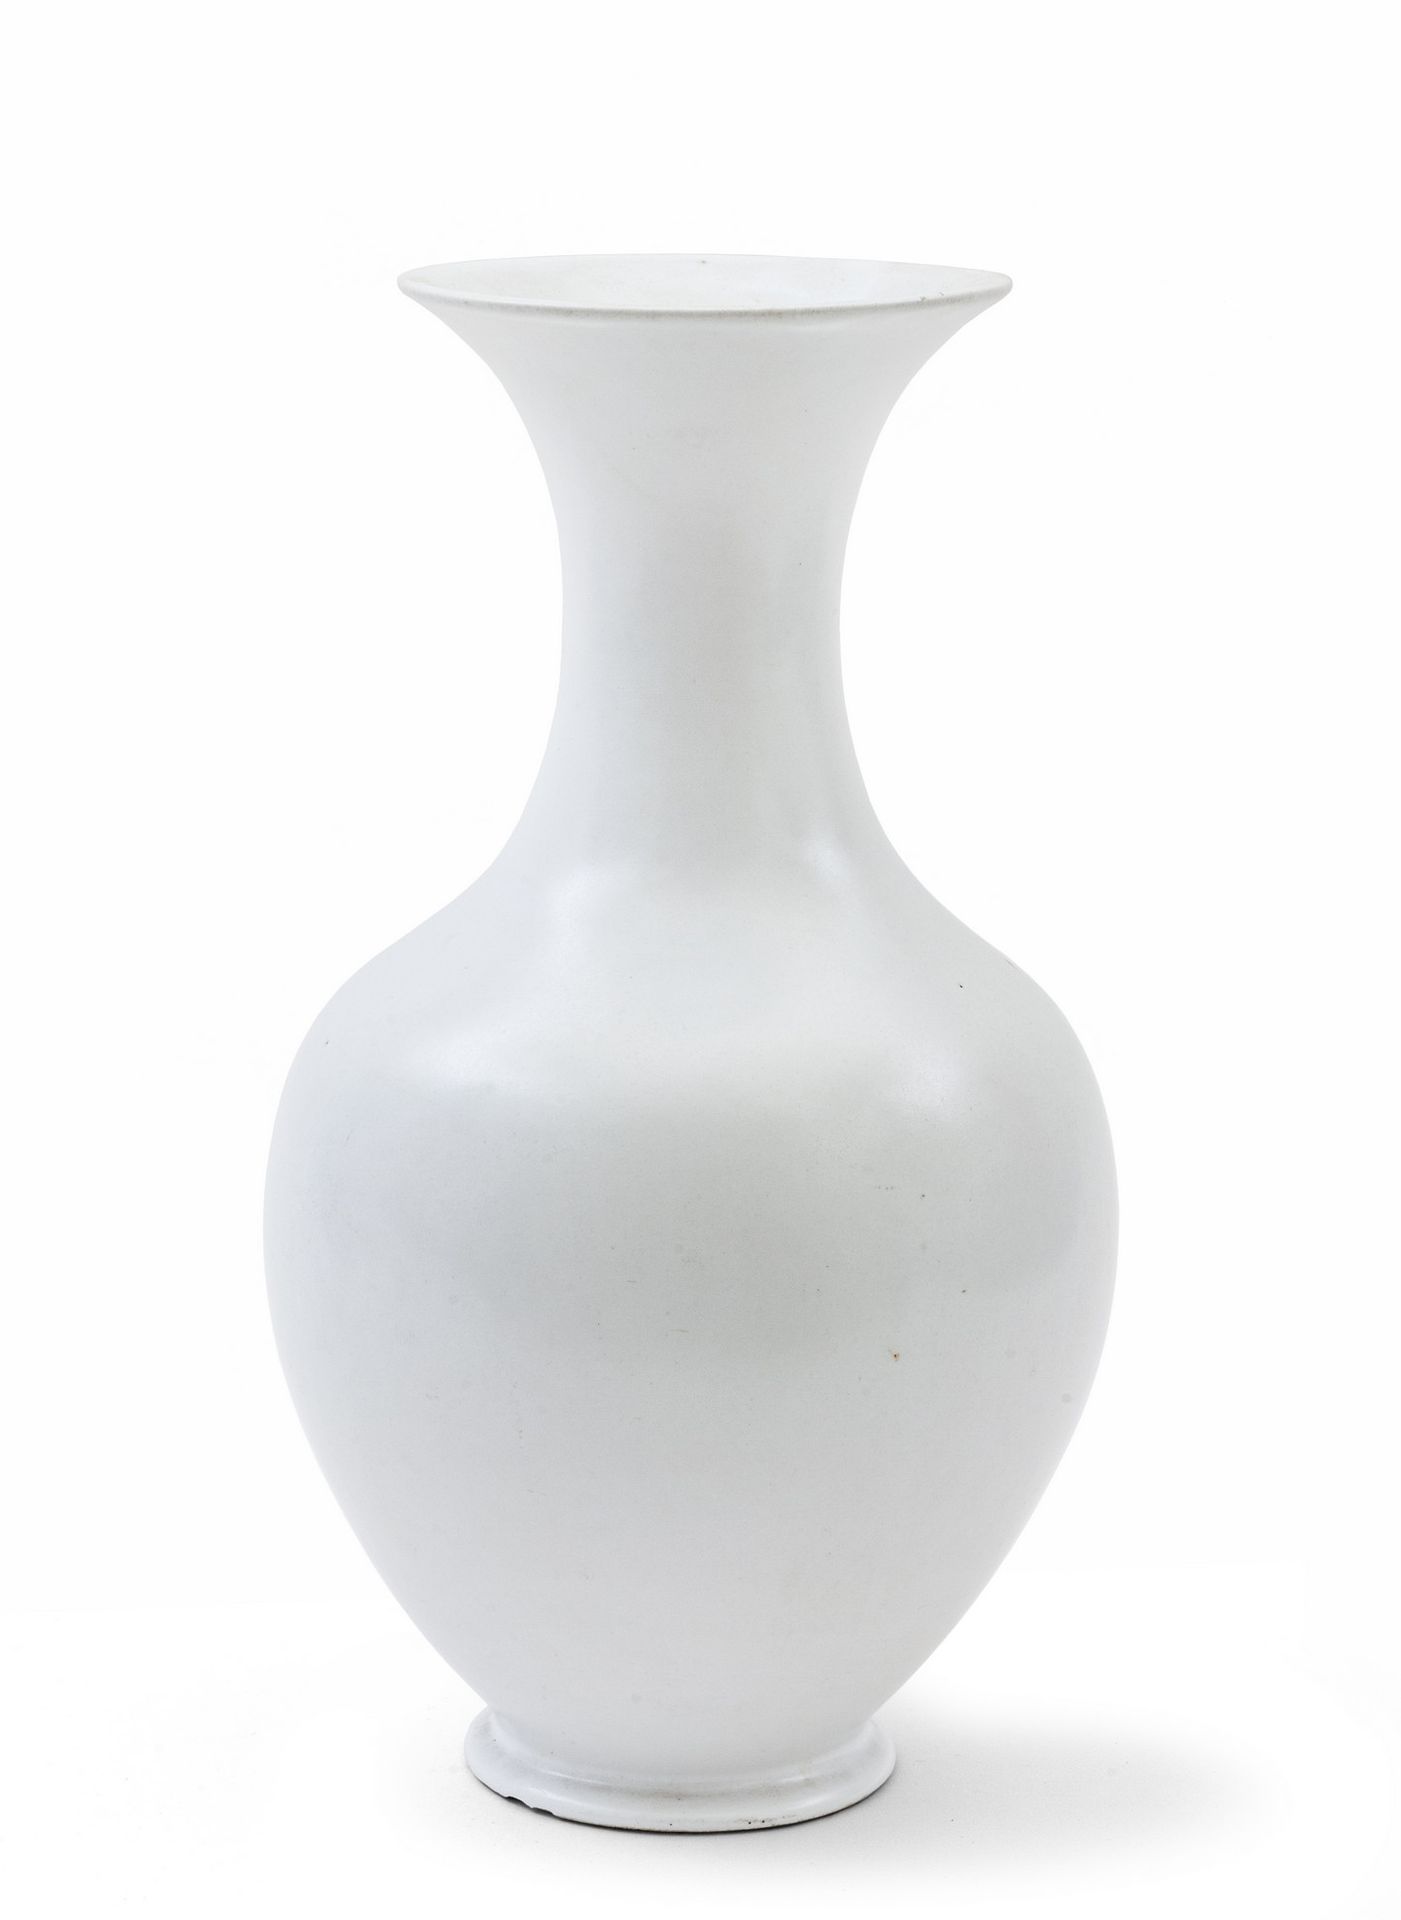 ANDLOVIZ GUIDO GUIDO ANDLOVIZ
Un vaso modello '655' per S.C.I. (Società Ceramica&hellip;